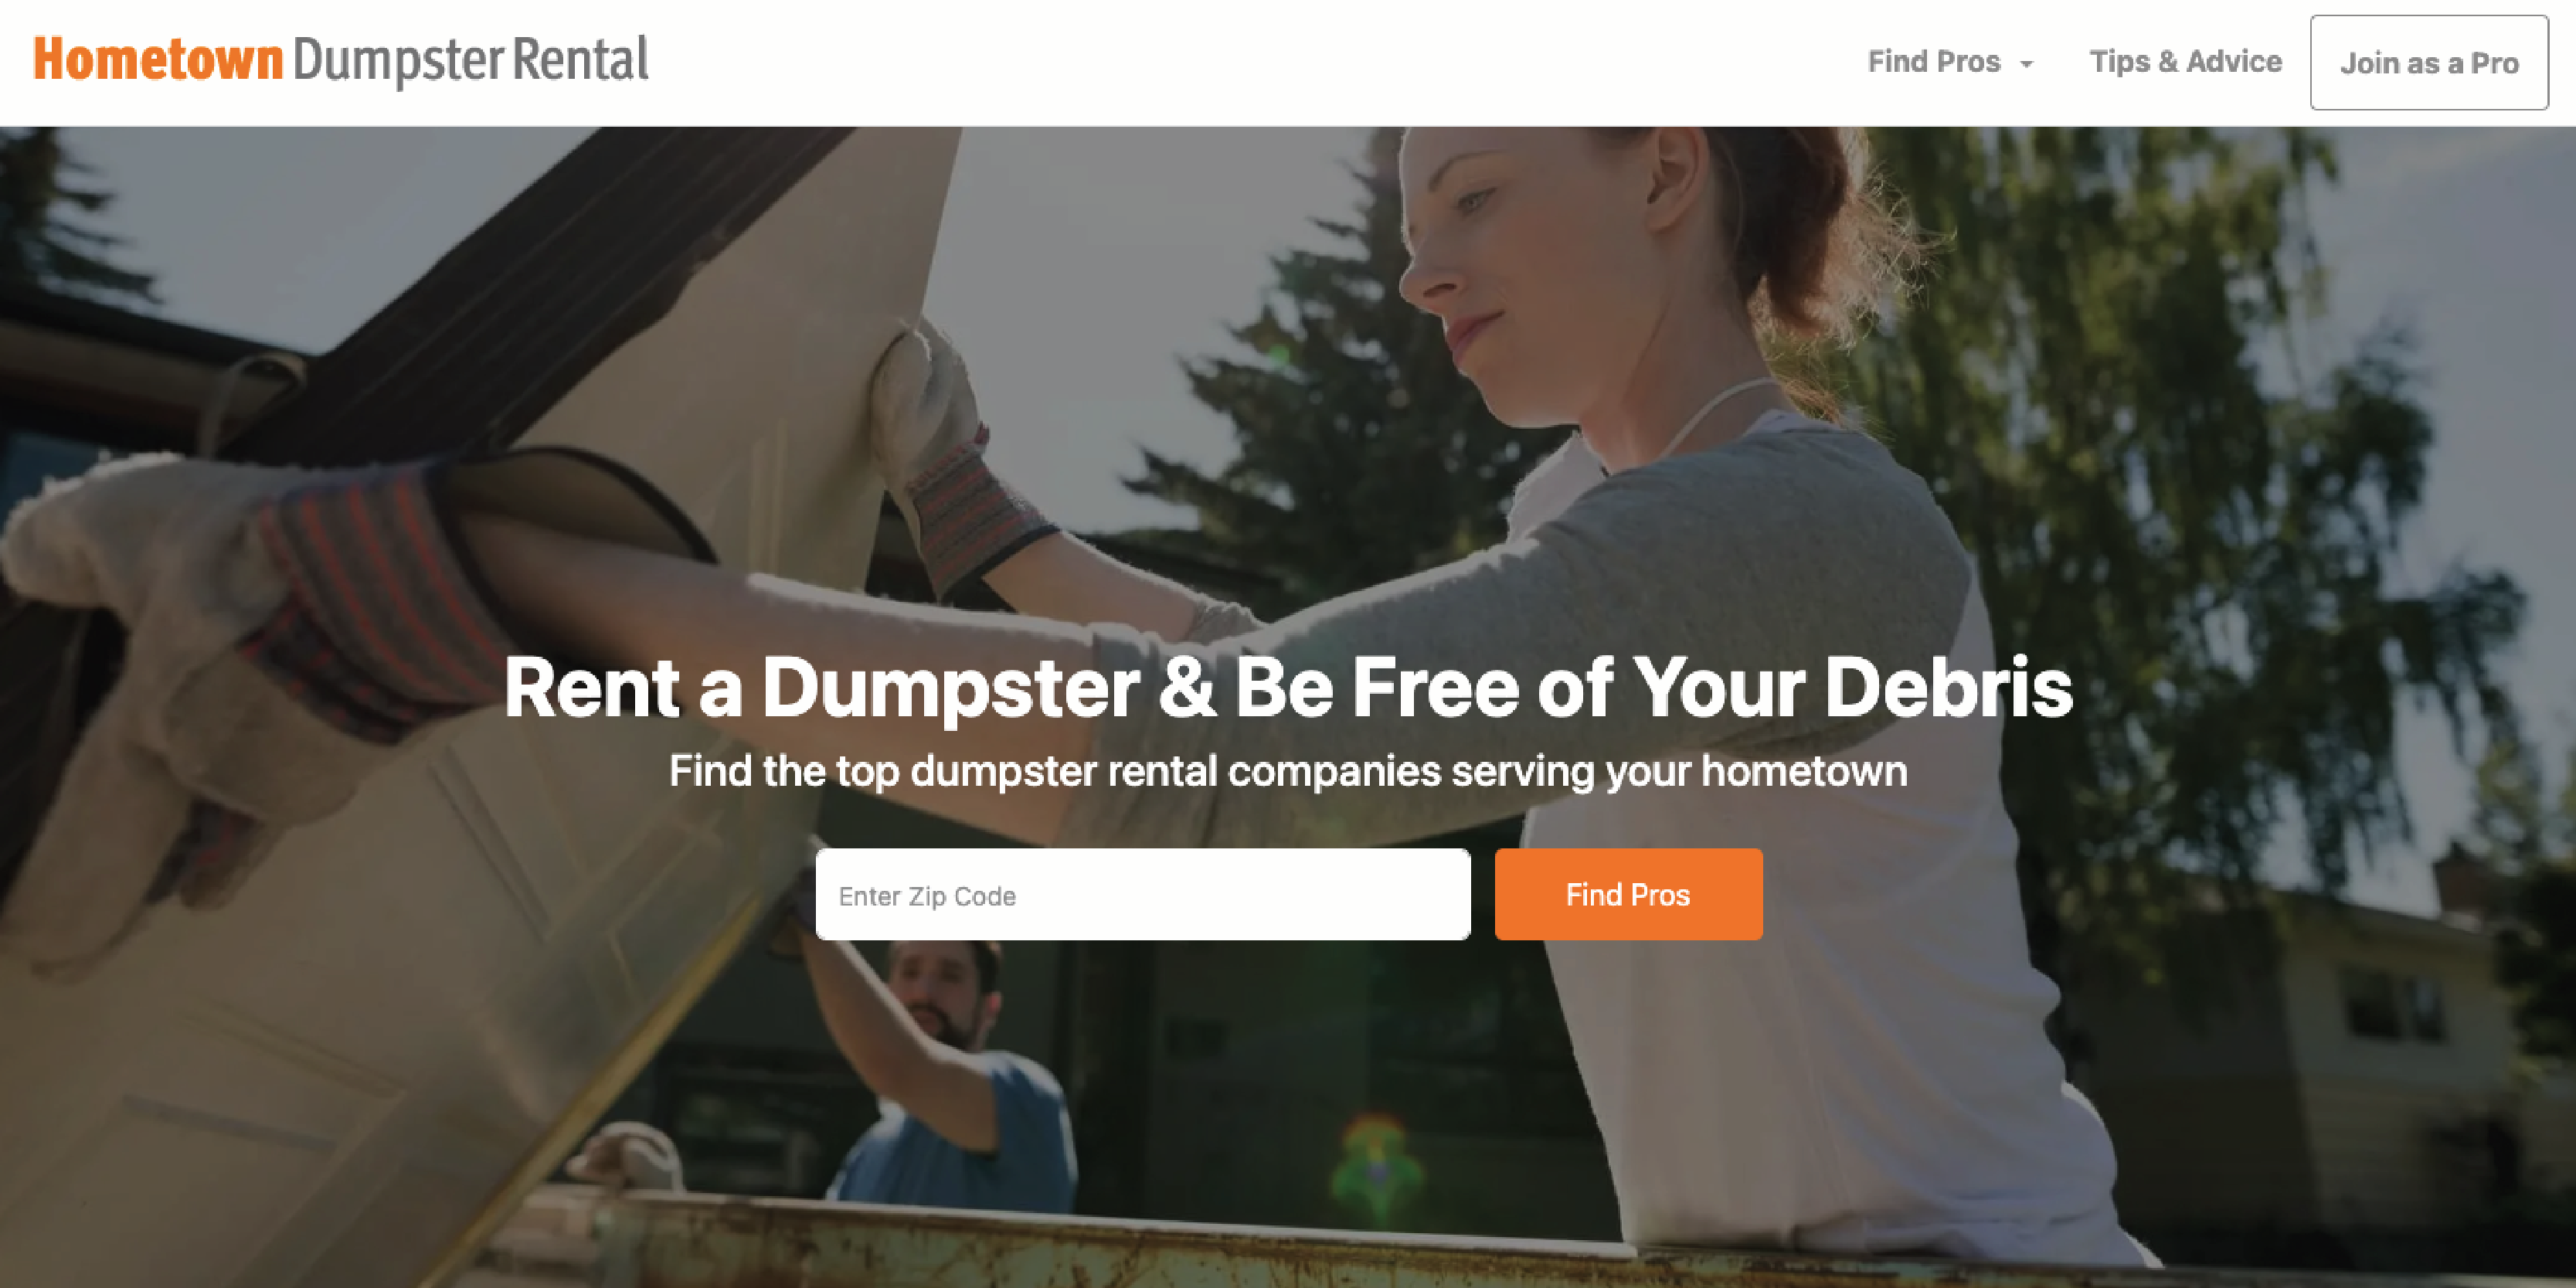 Hometown Dumpster Rental homepage